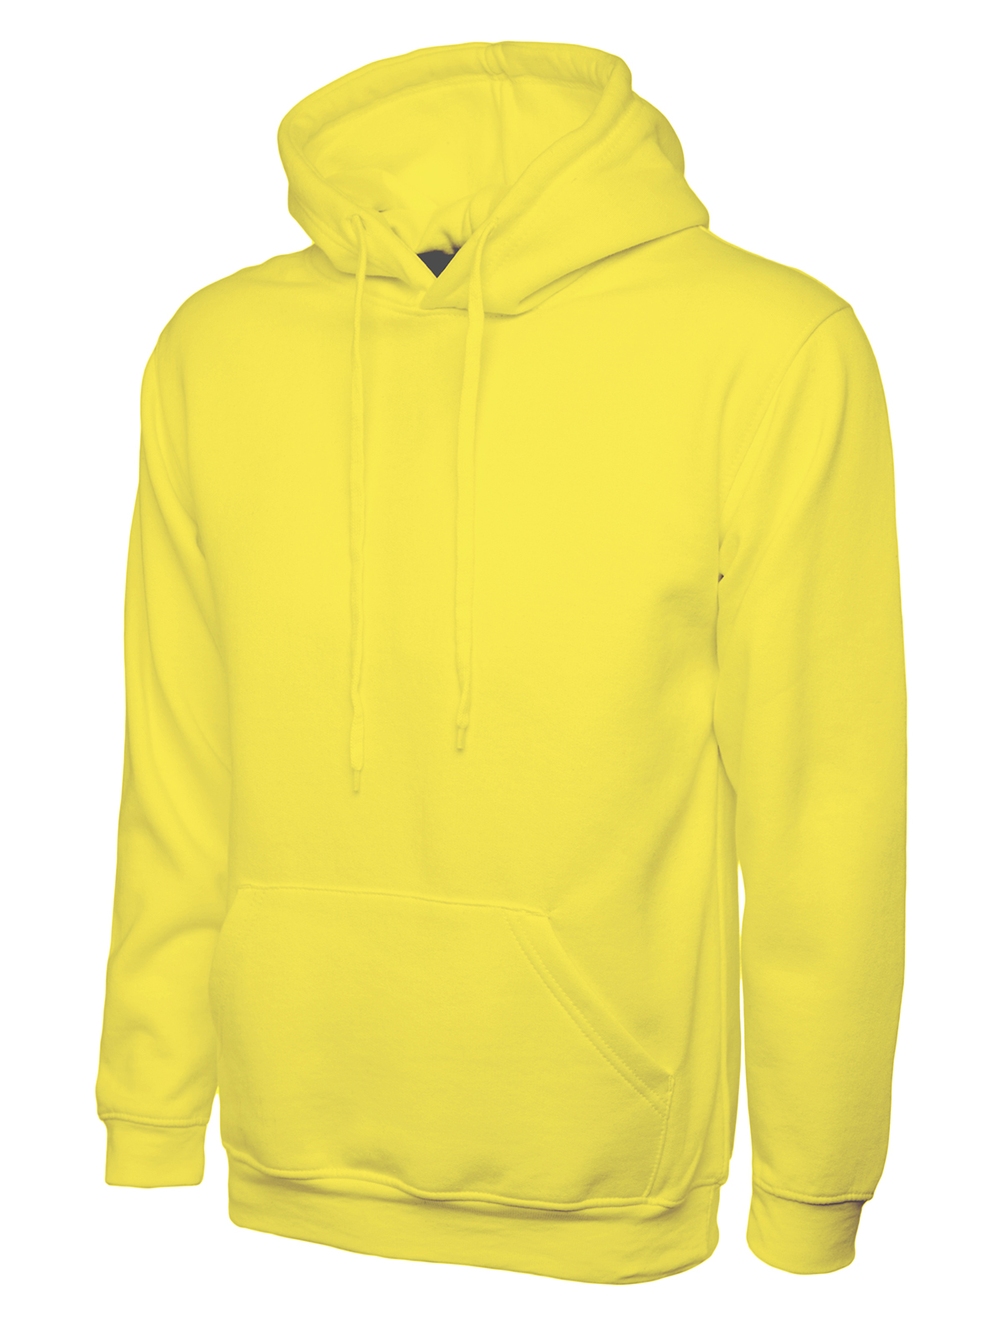 Yellowhoodedsweatshirt